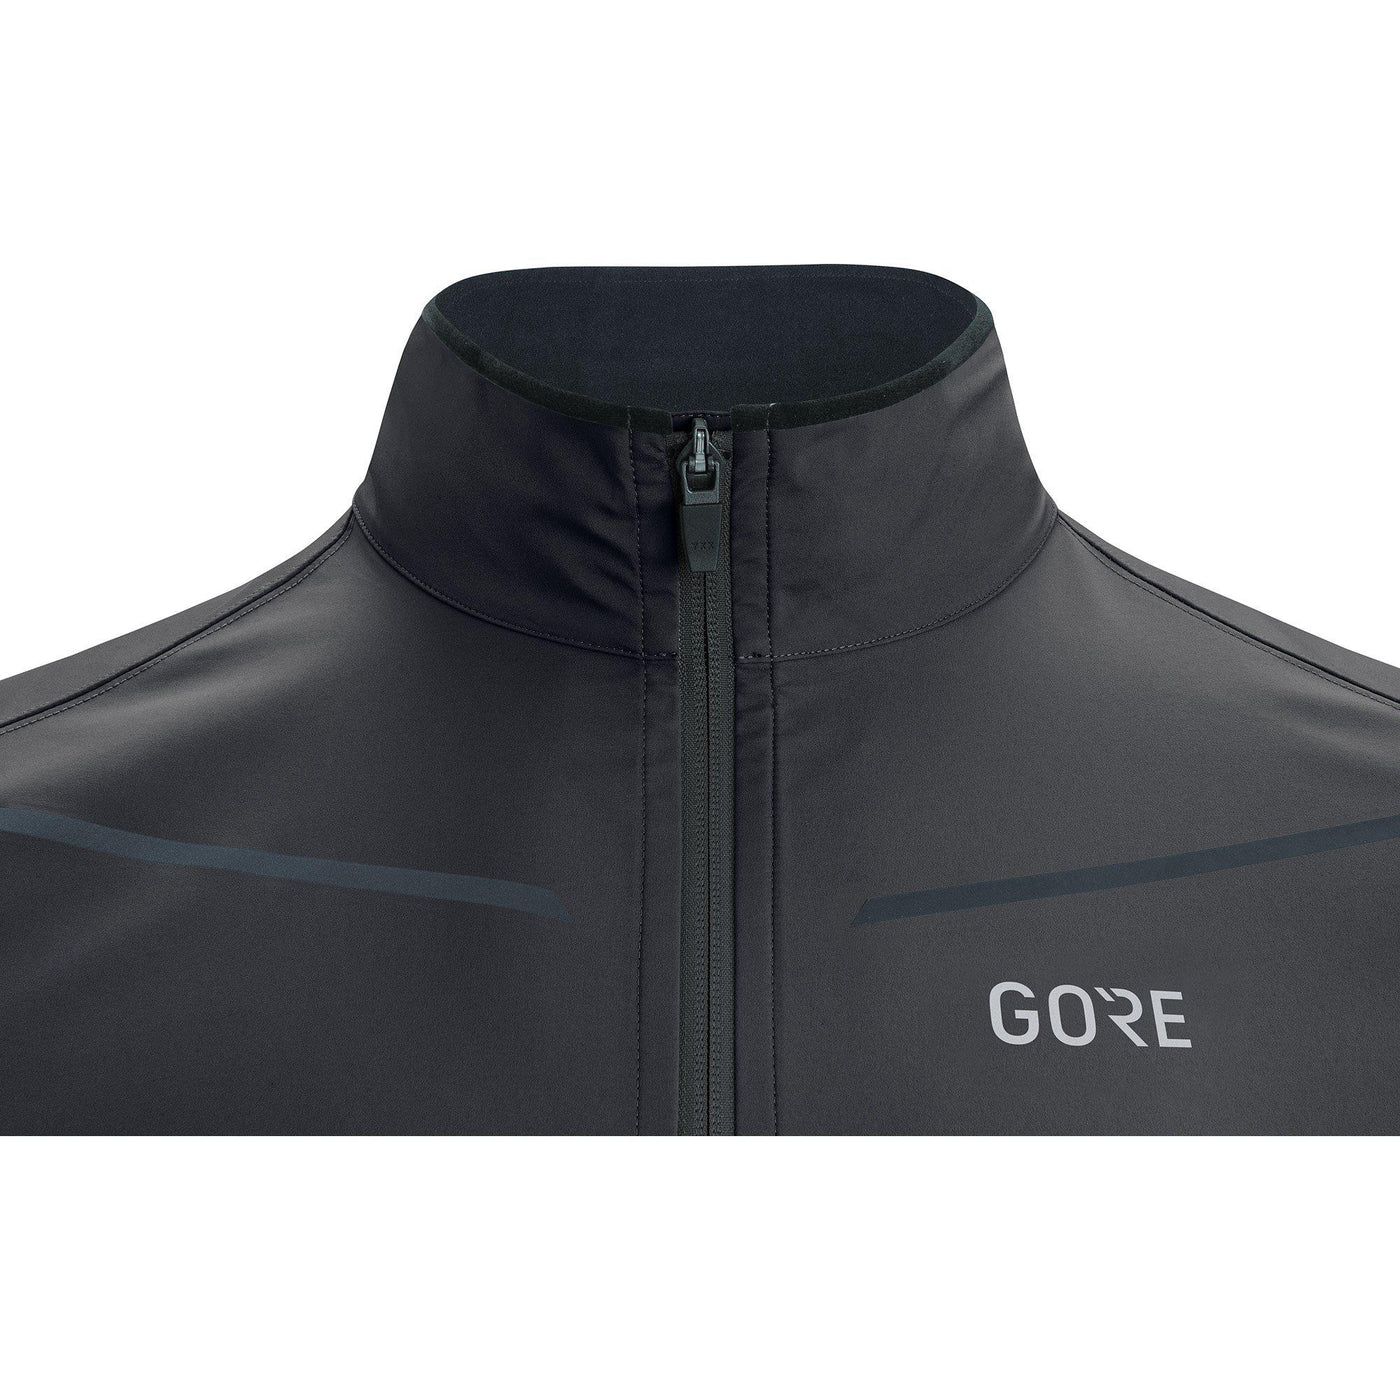 Gore Wear R3 GTX Partial Jacket Black-Runster